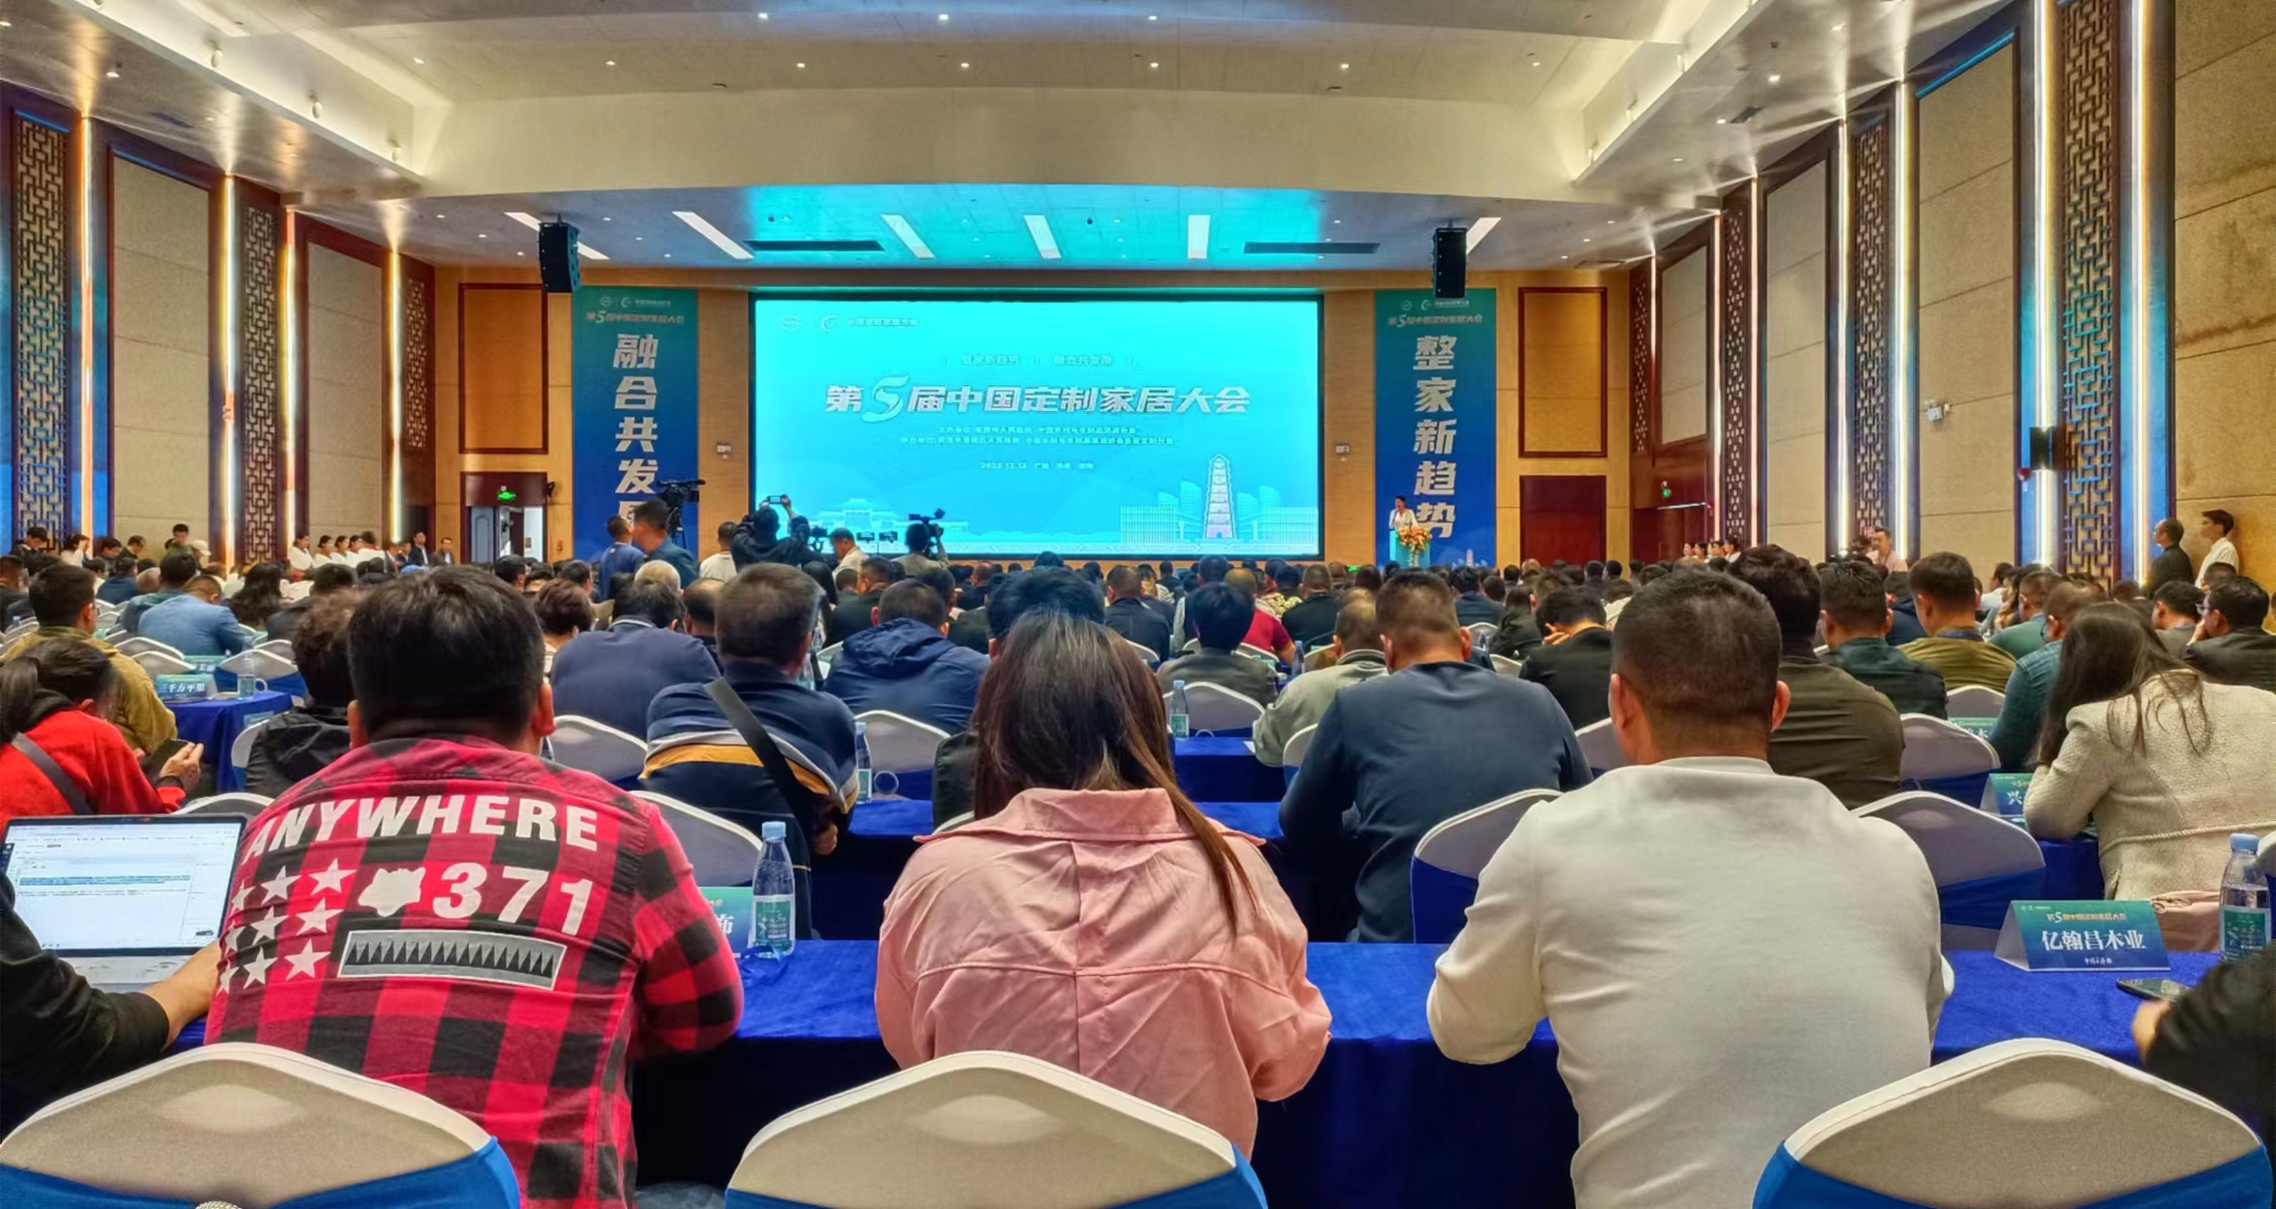 第五屆中國定製家居大會在桂貴港舉辦 簽約投資項目金額超40億